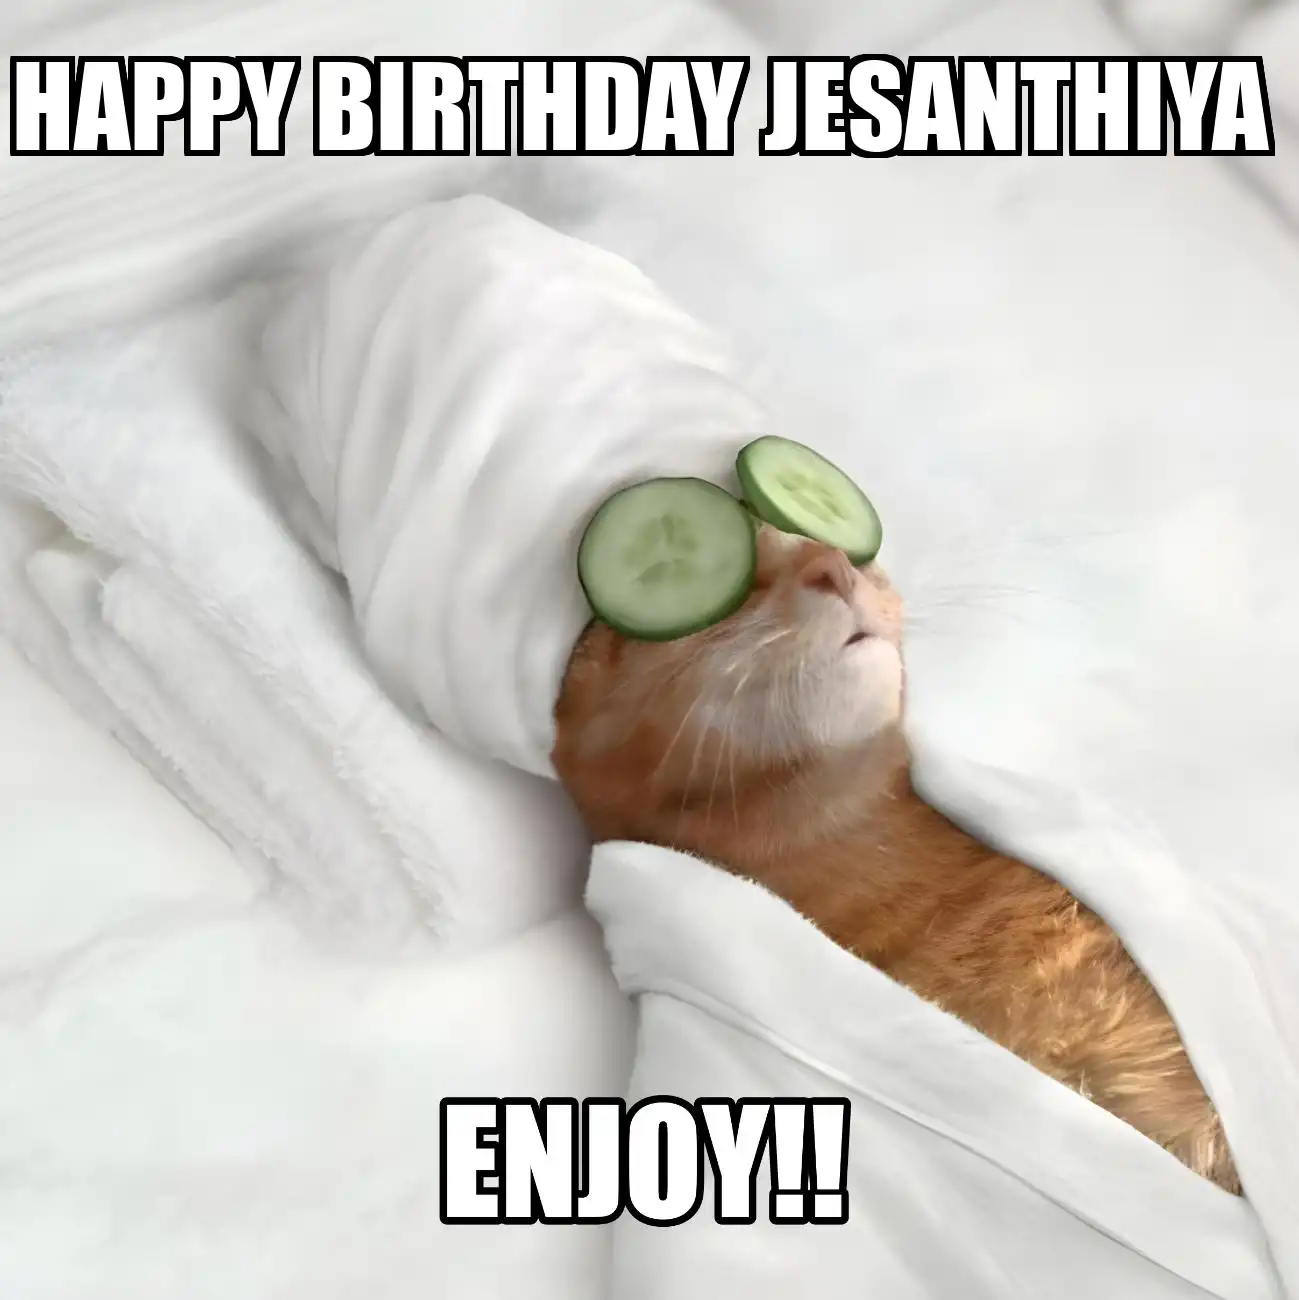 Happy Birthday Jesanthiya Enjoy Cat Meme